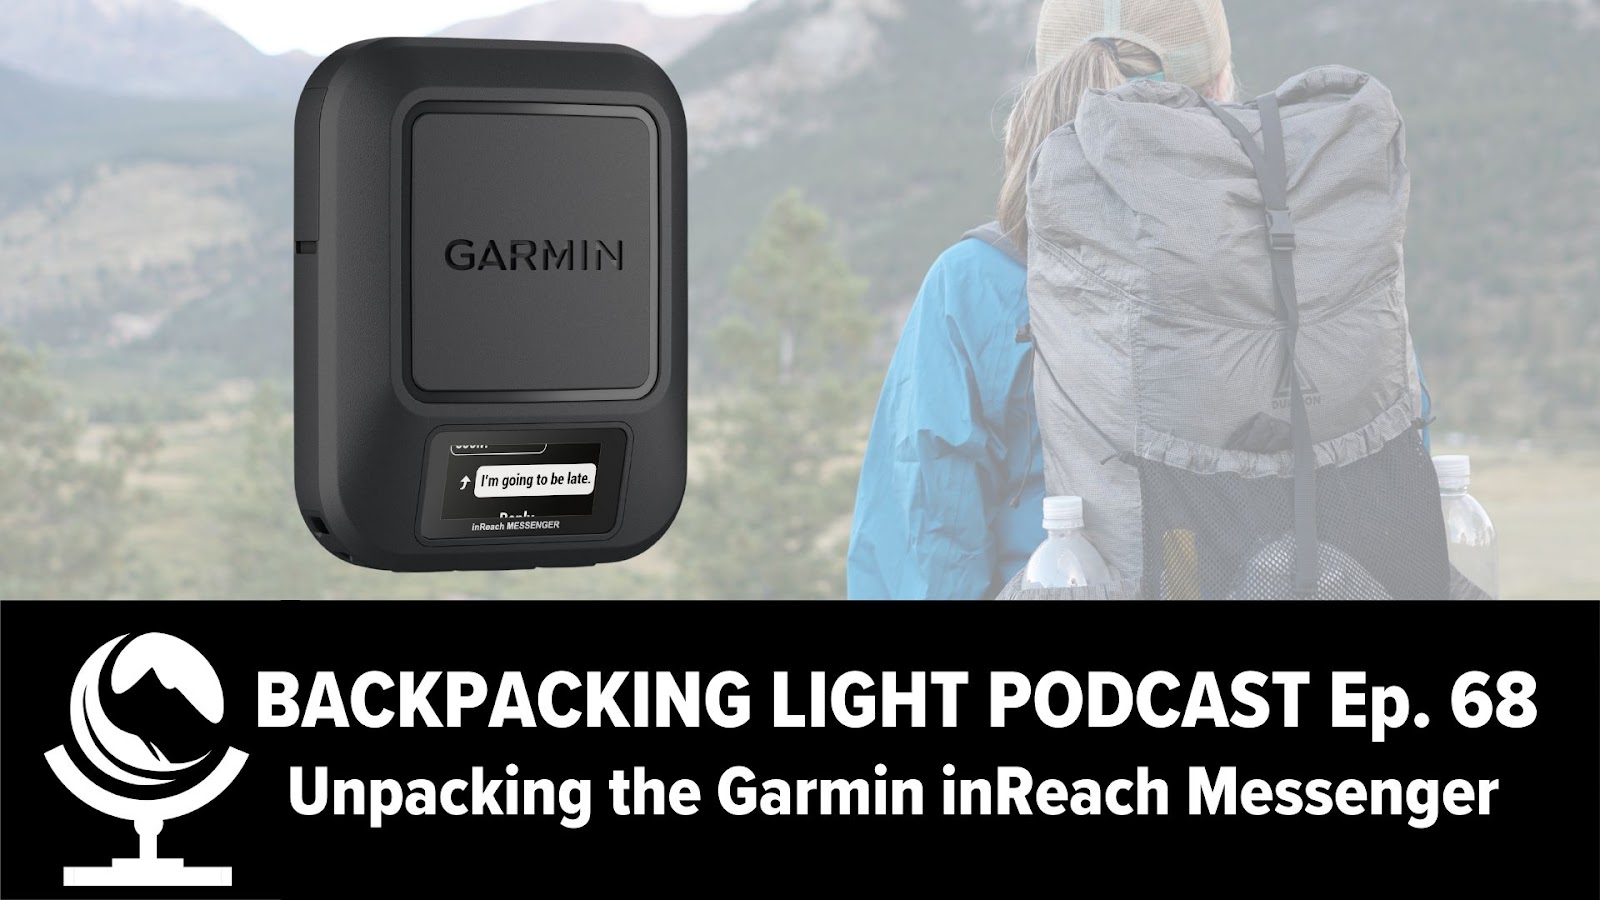 Backpacking-light-podcast-garmin-inreach-messenger